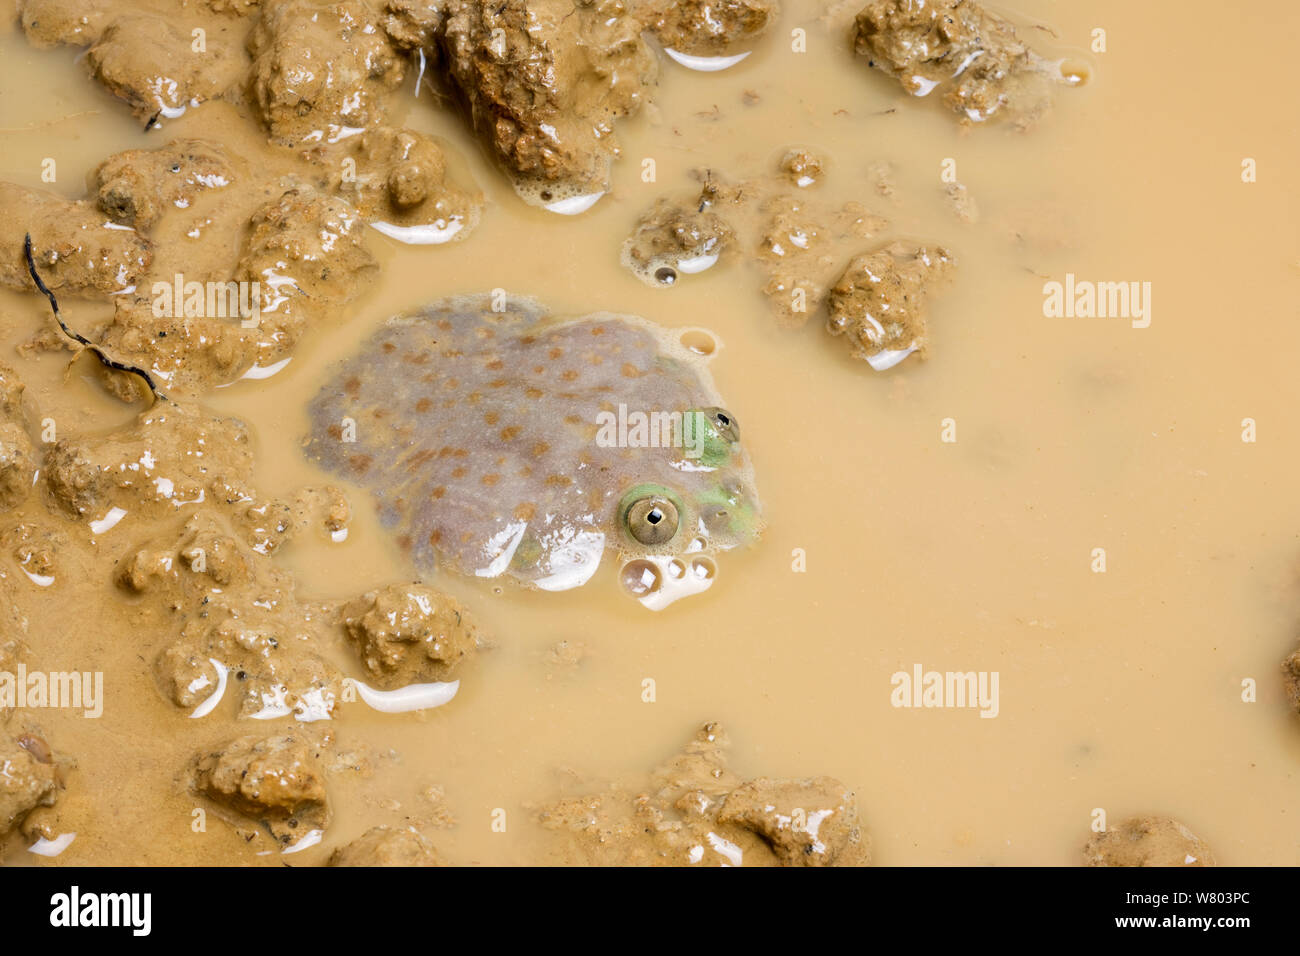 Budgett&# 39;s Frog (Lepidobatrachus laevis) surtout submergés dans l'eau boueuse, avec les yeux visibles au-dessus de l'eau, captive, se produit en Amérique du Sud. Banque D'Images